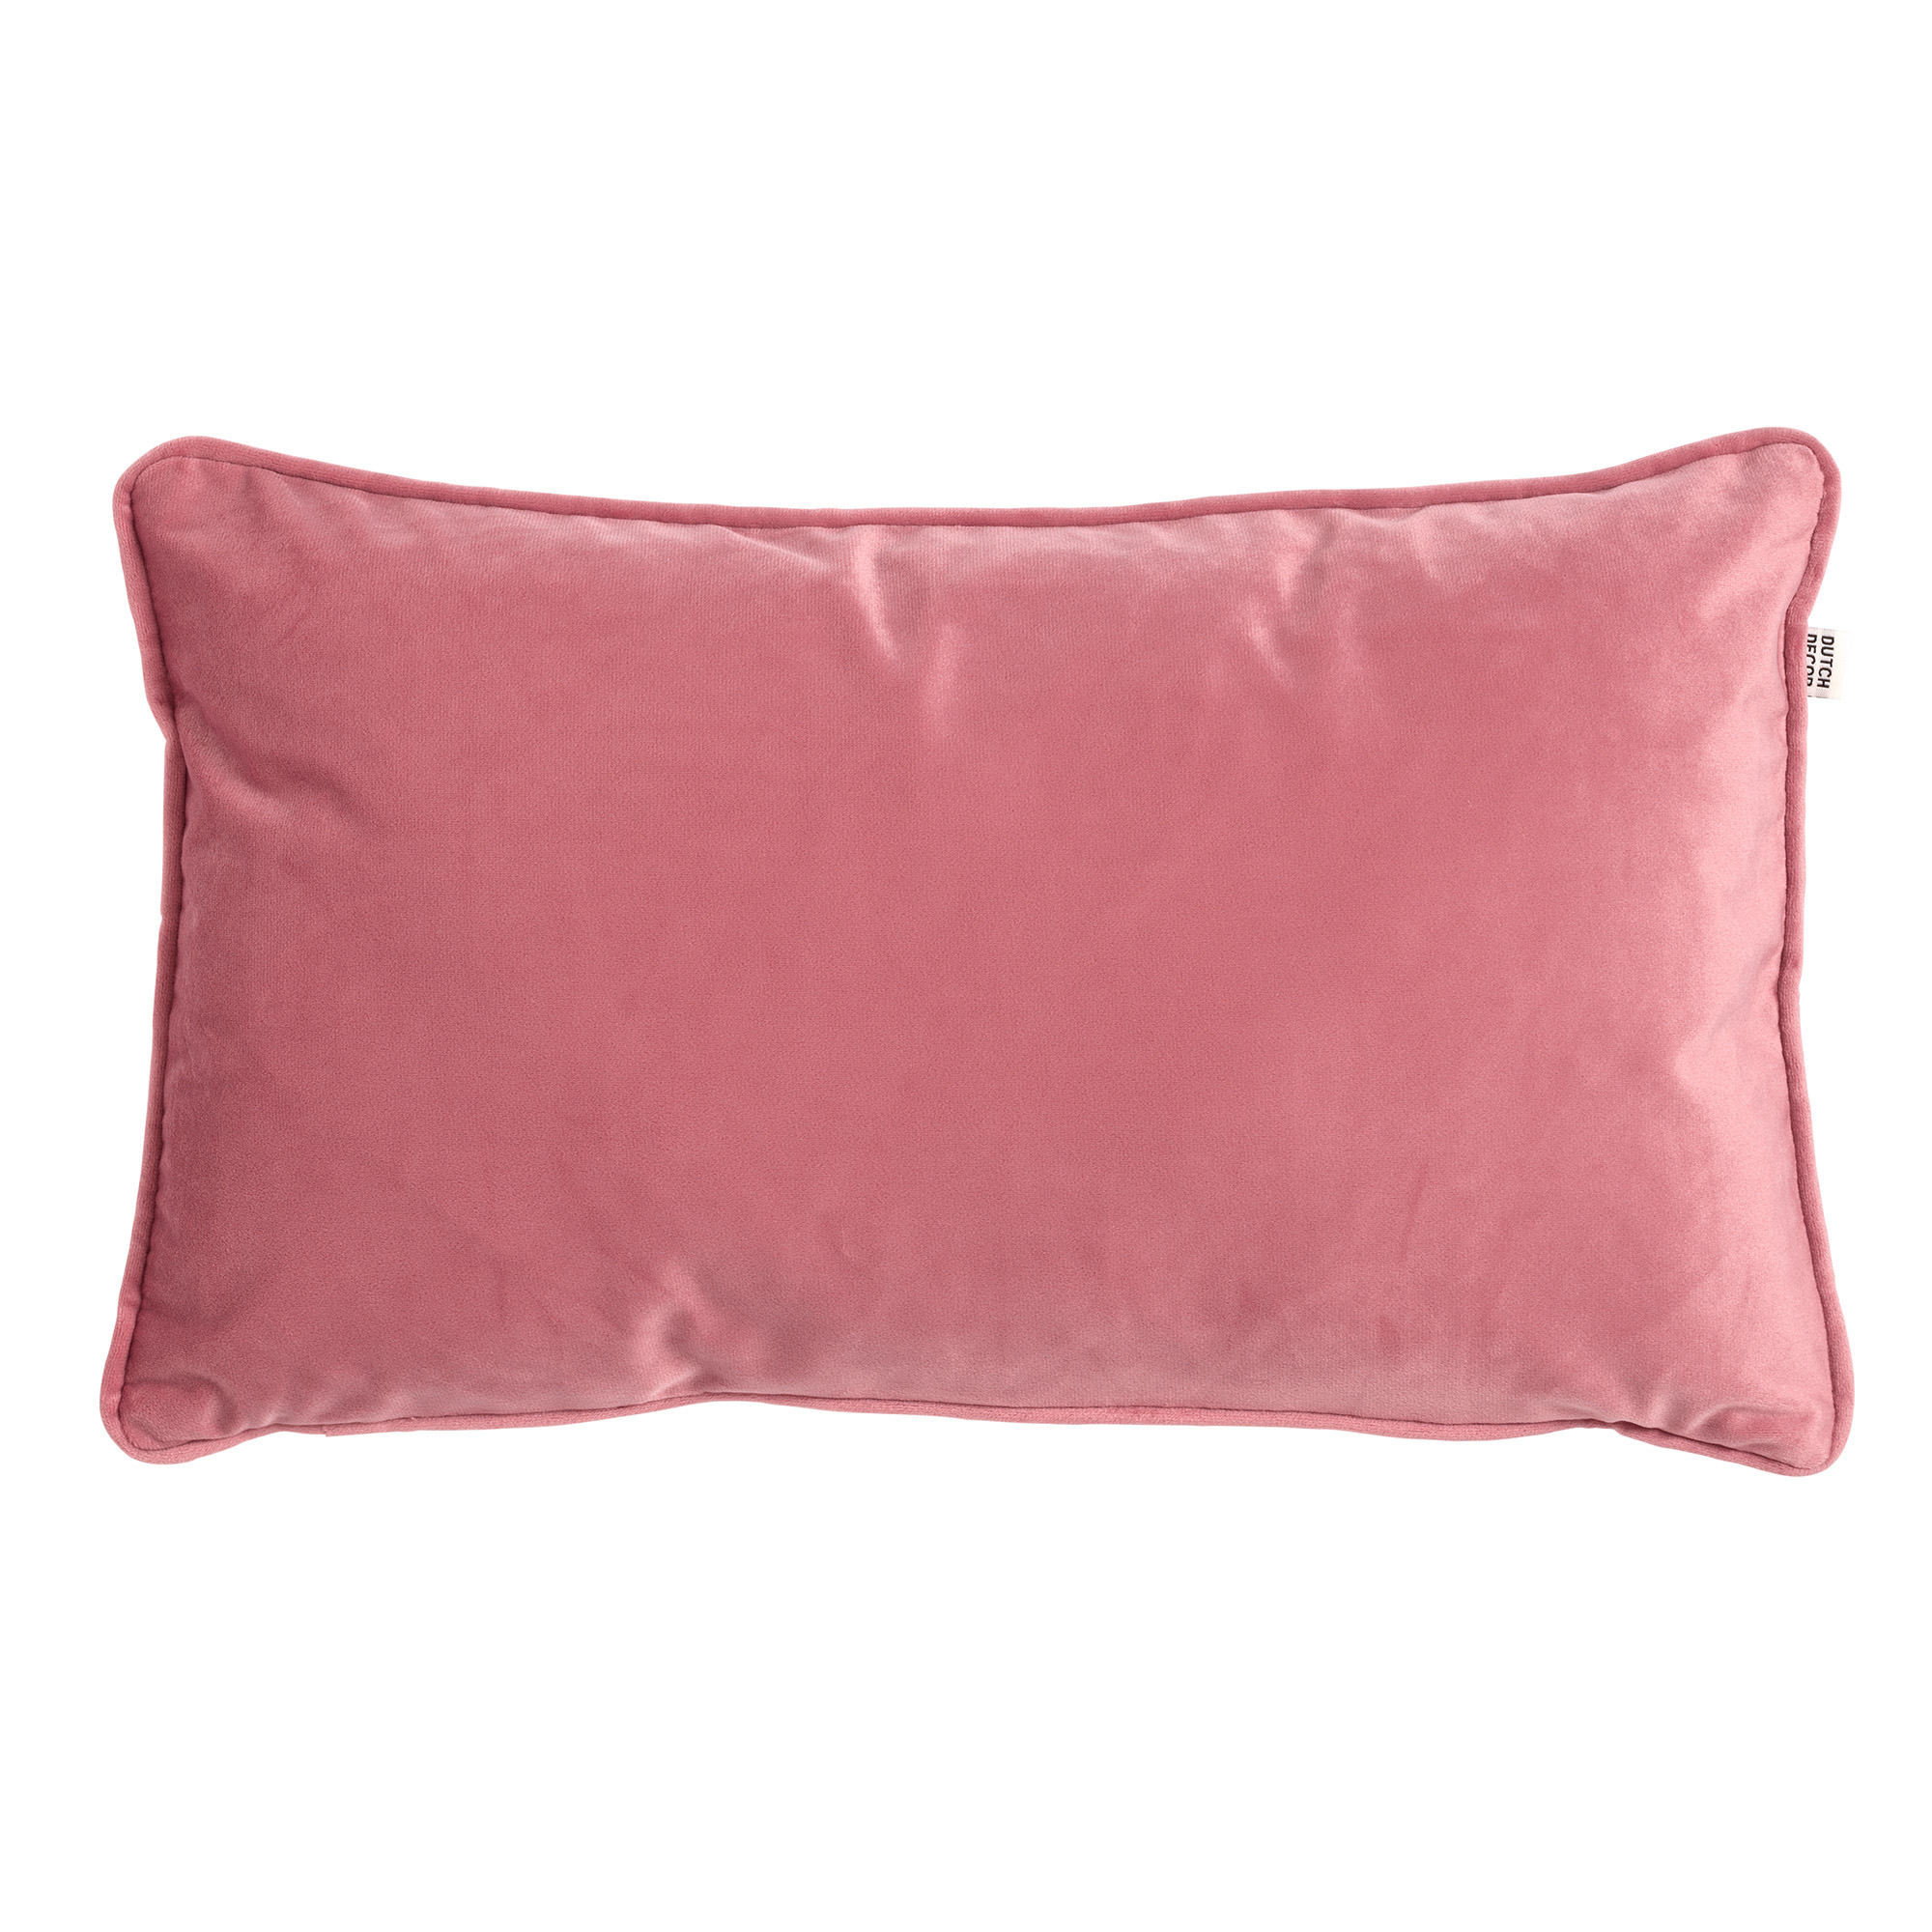 FINN - Sierkussen 30x50 cm - Dusty Rose - roze - velvet lendekussen